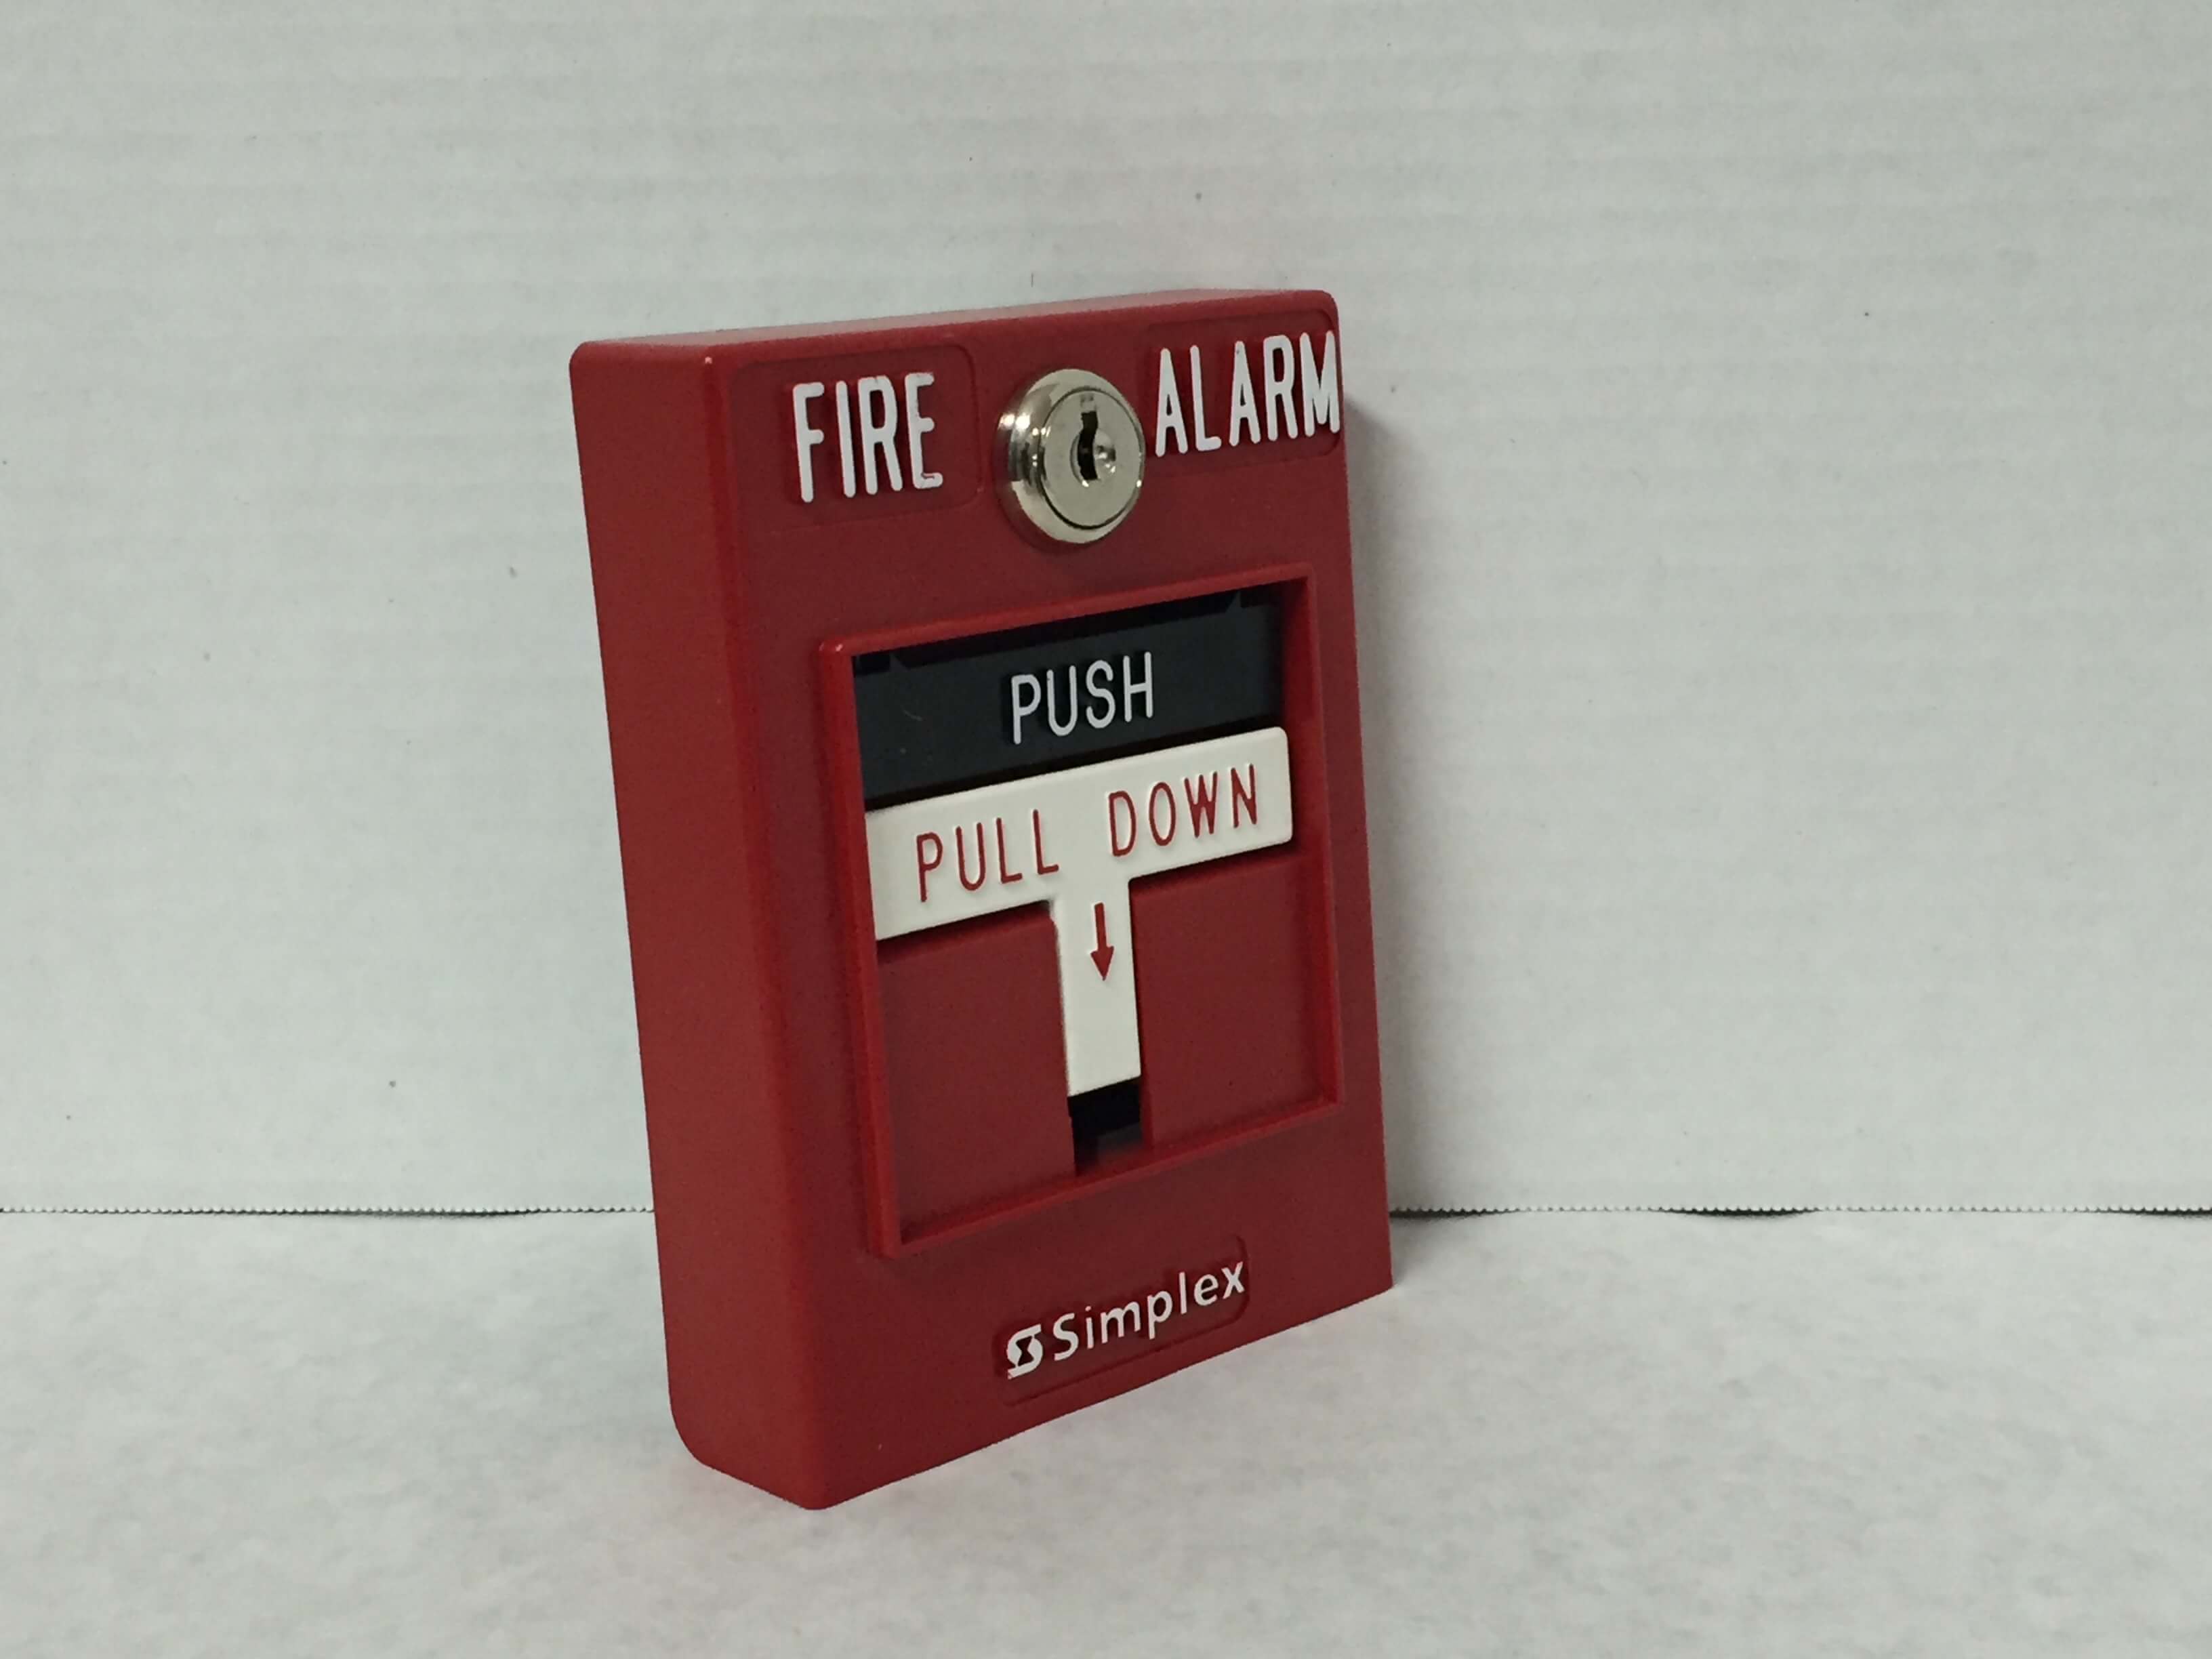 Simplex 4099-9003 - FireAlarms.tv - jjinc24/U8oL0's Fire Alarm ...